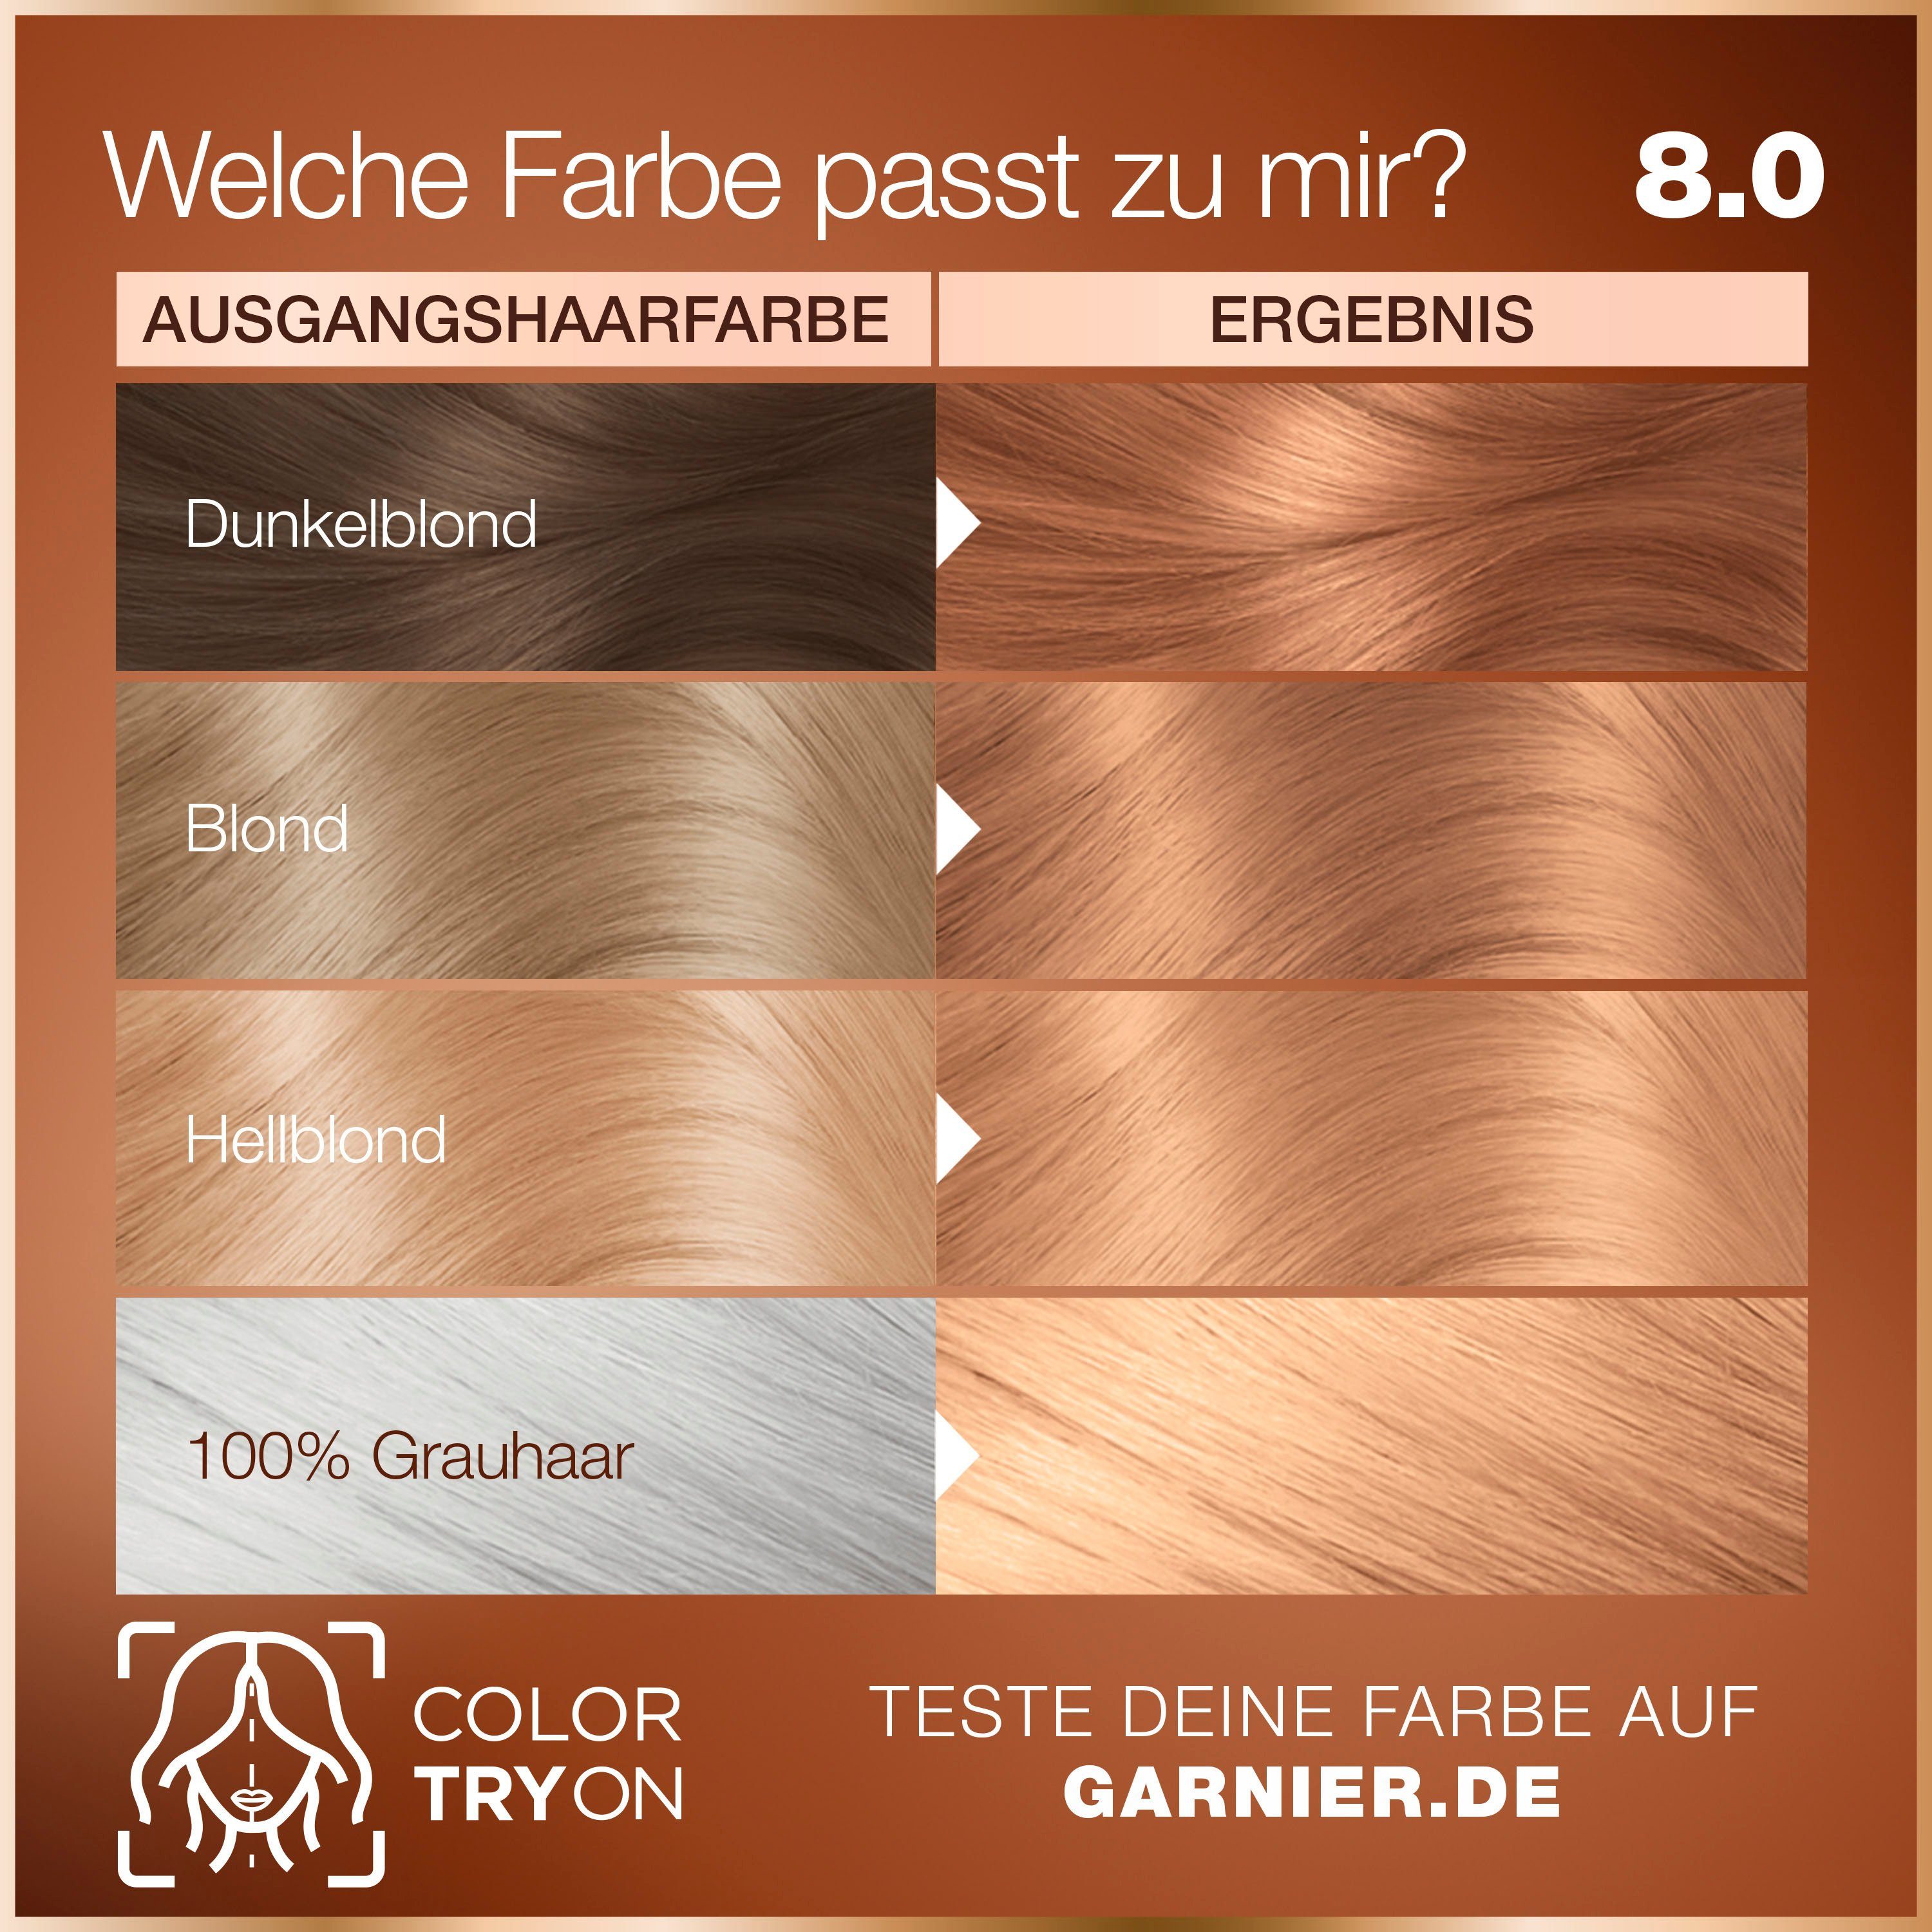 Coloration GOOD Dauerhafte Garnier GARNIER Haarfarbe